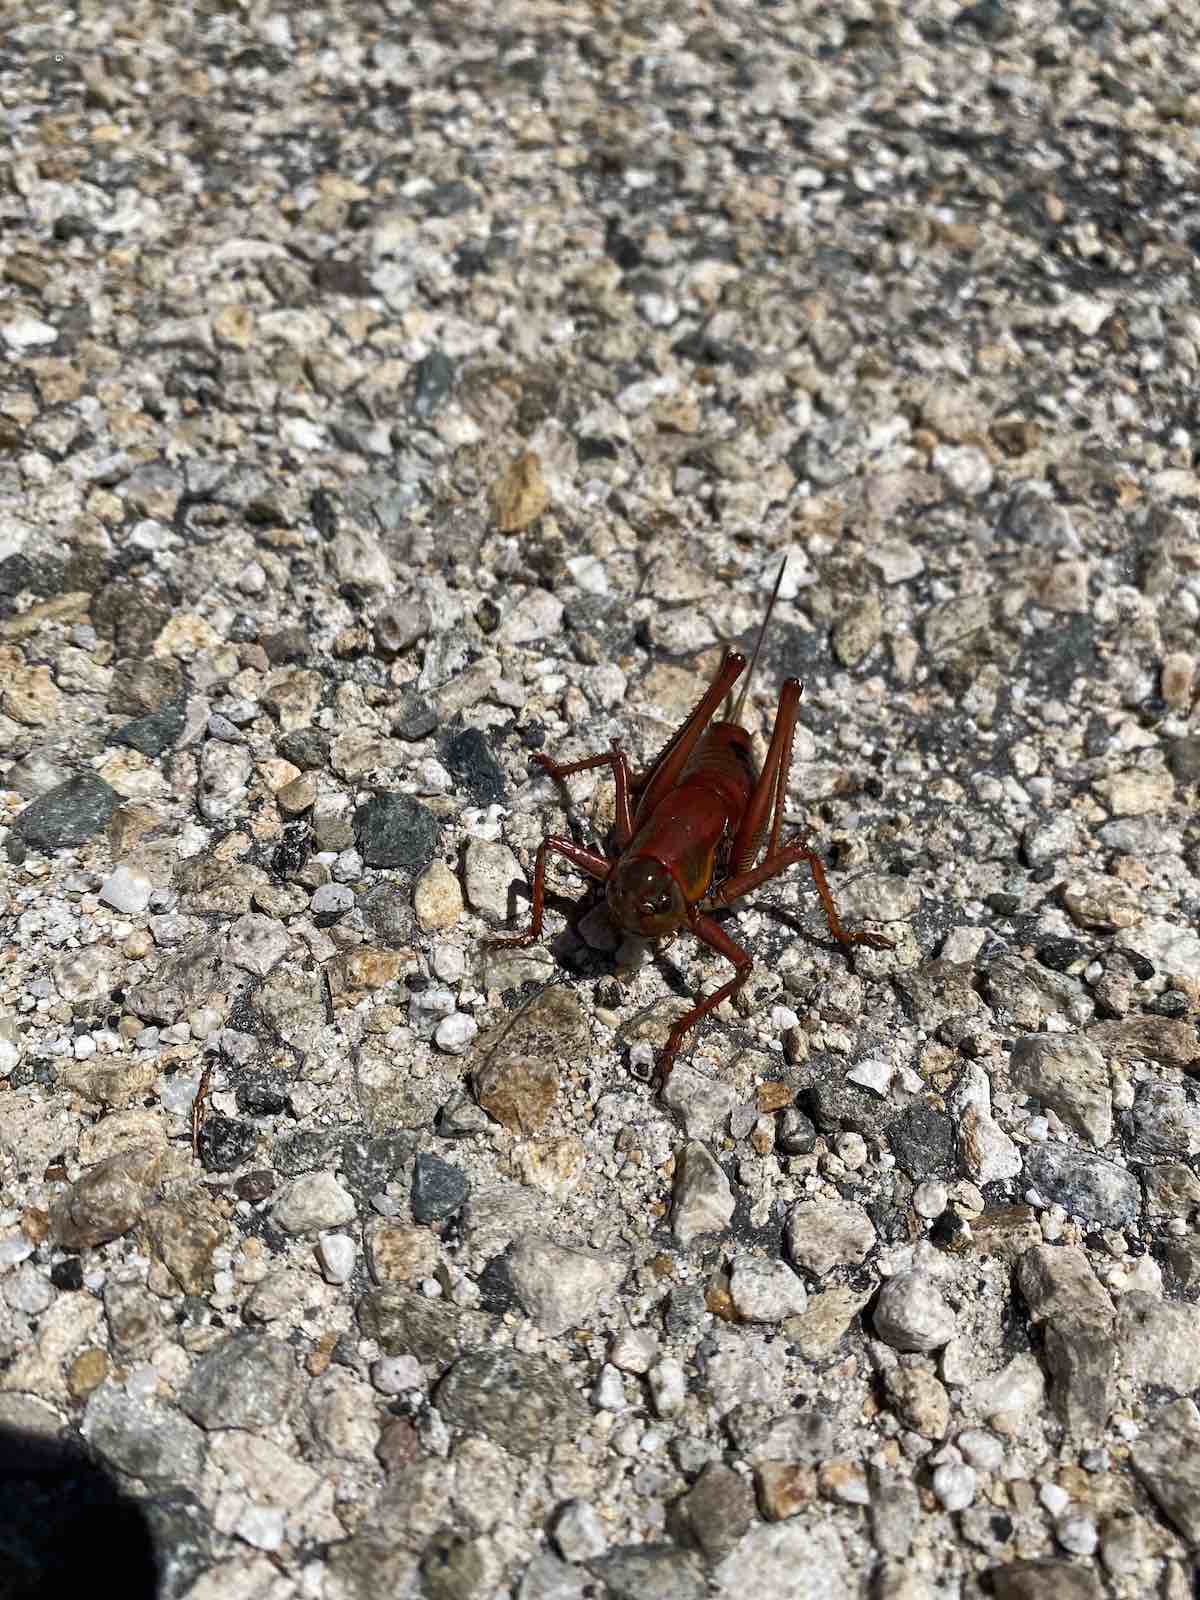 Large mormon cricket in Idaho (Anabrus simplex)